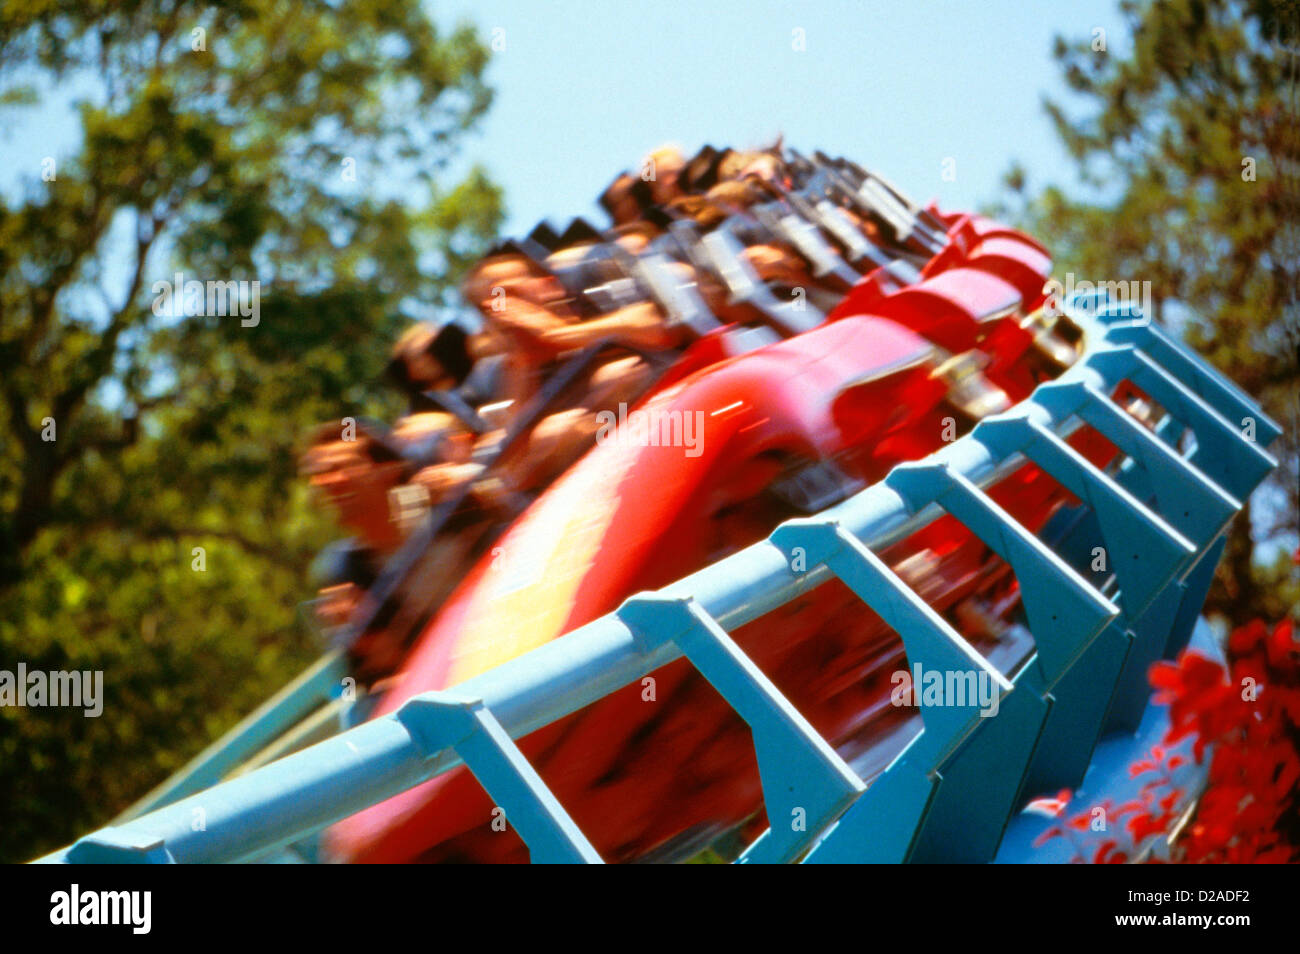 Virginia, Busch Gardens. Roller Coaster. Stock Photo